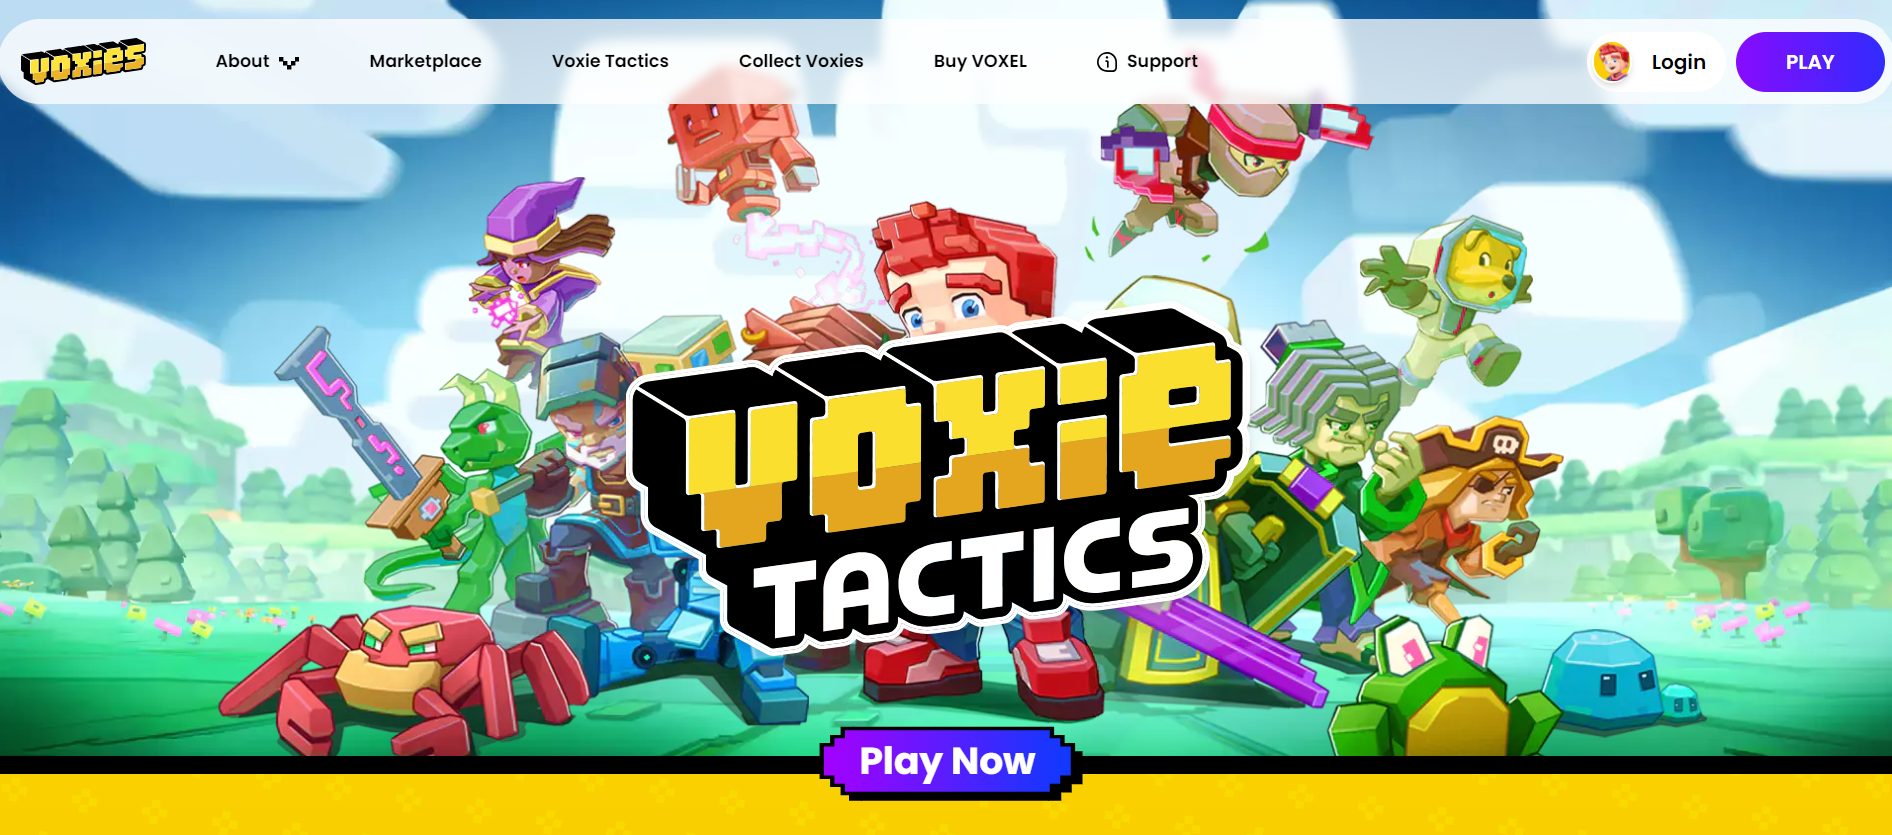 P2E hra Voxie Tactics byla spuštěna na enginu Unity